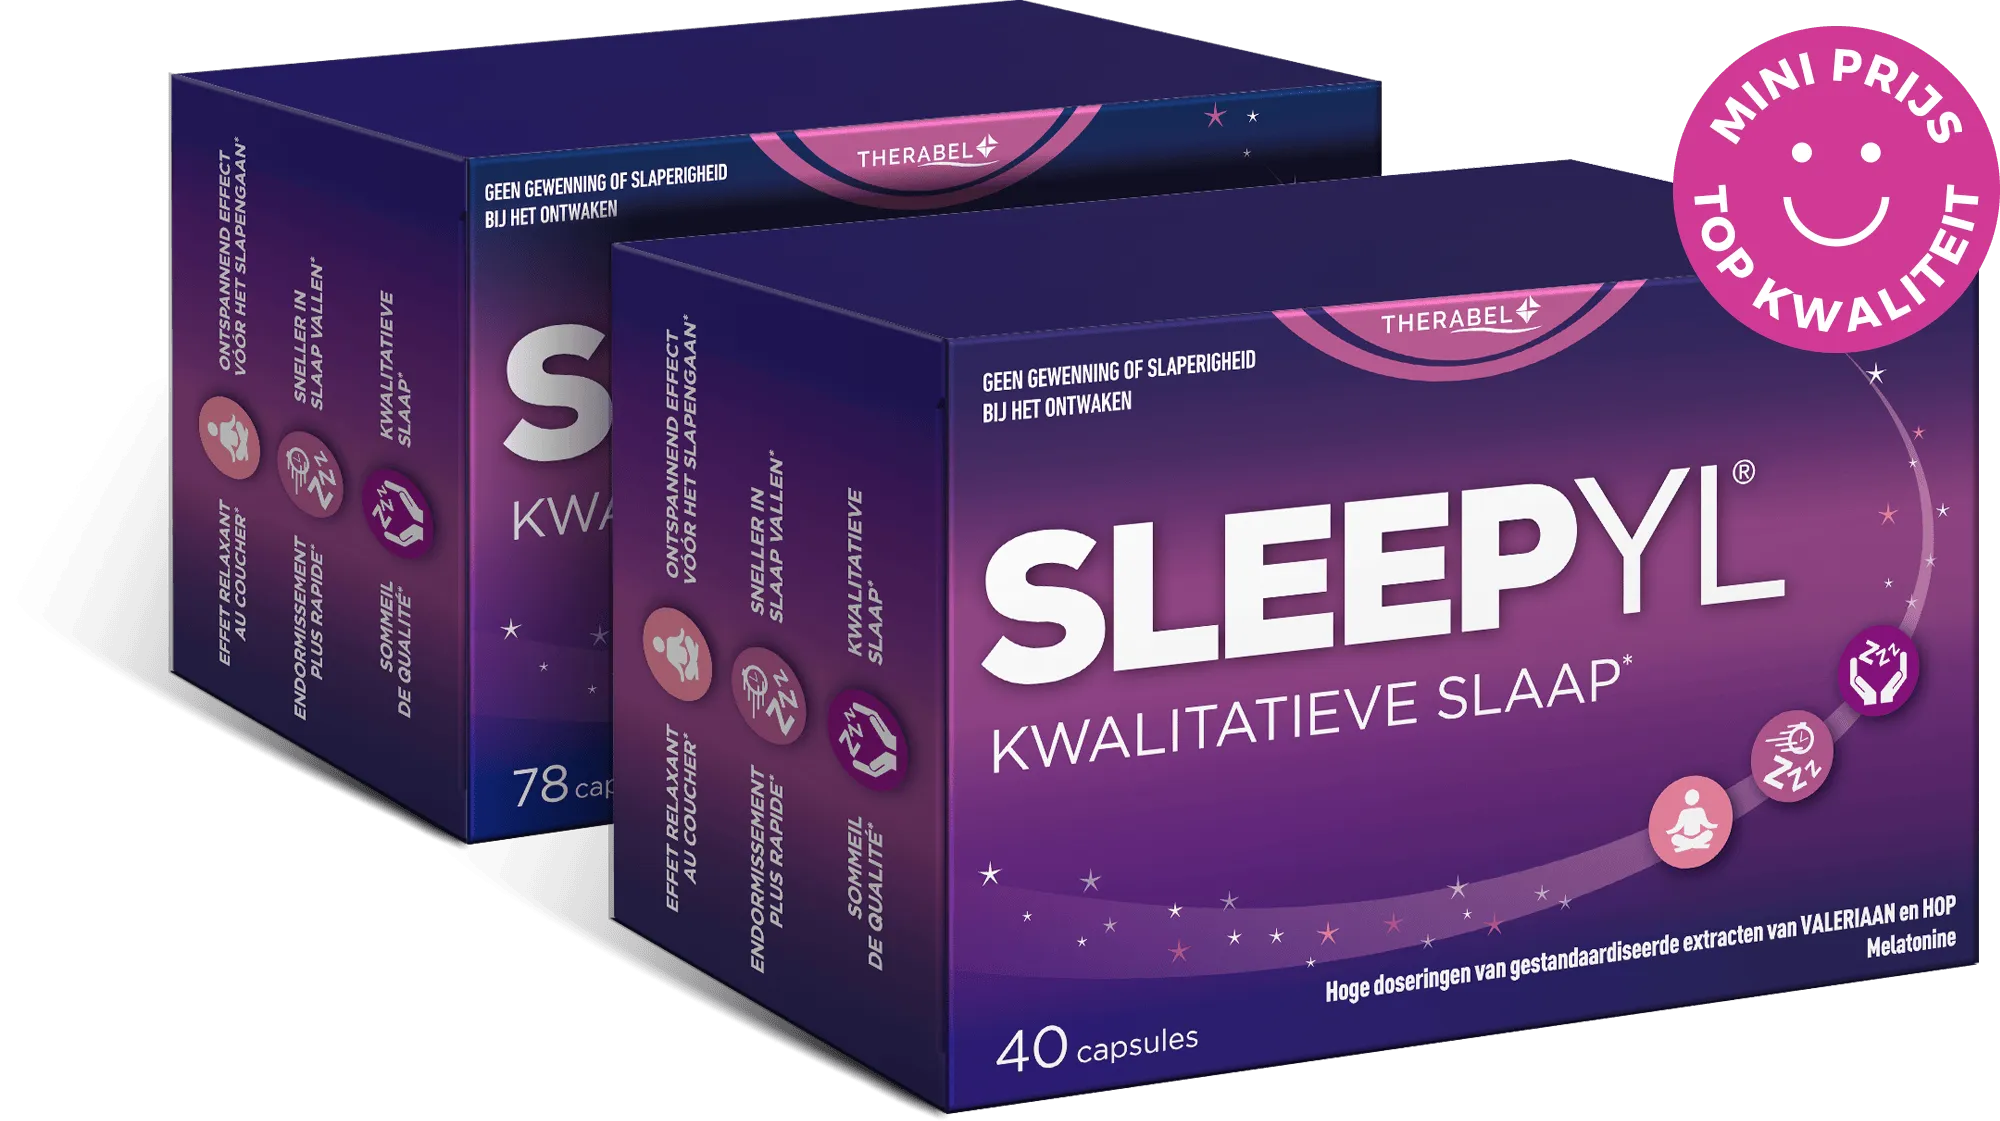 SLEEPYL®
Slaapwel dankzij de 3-voudige werking